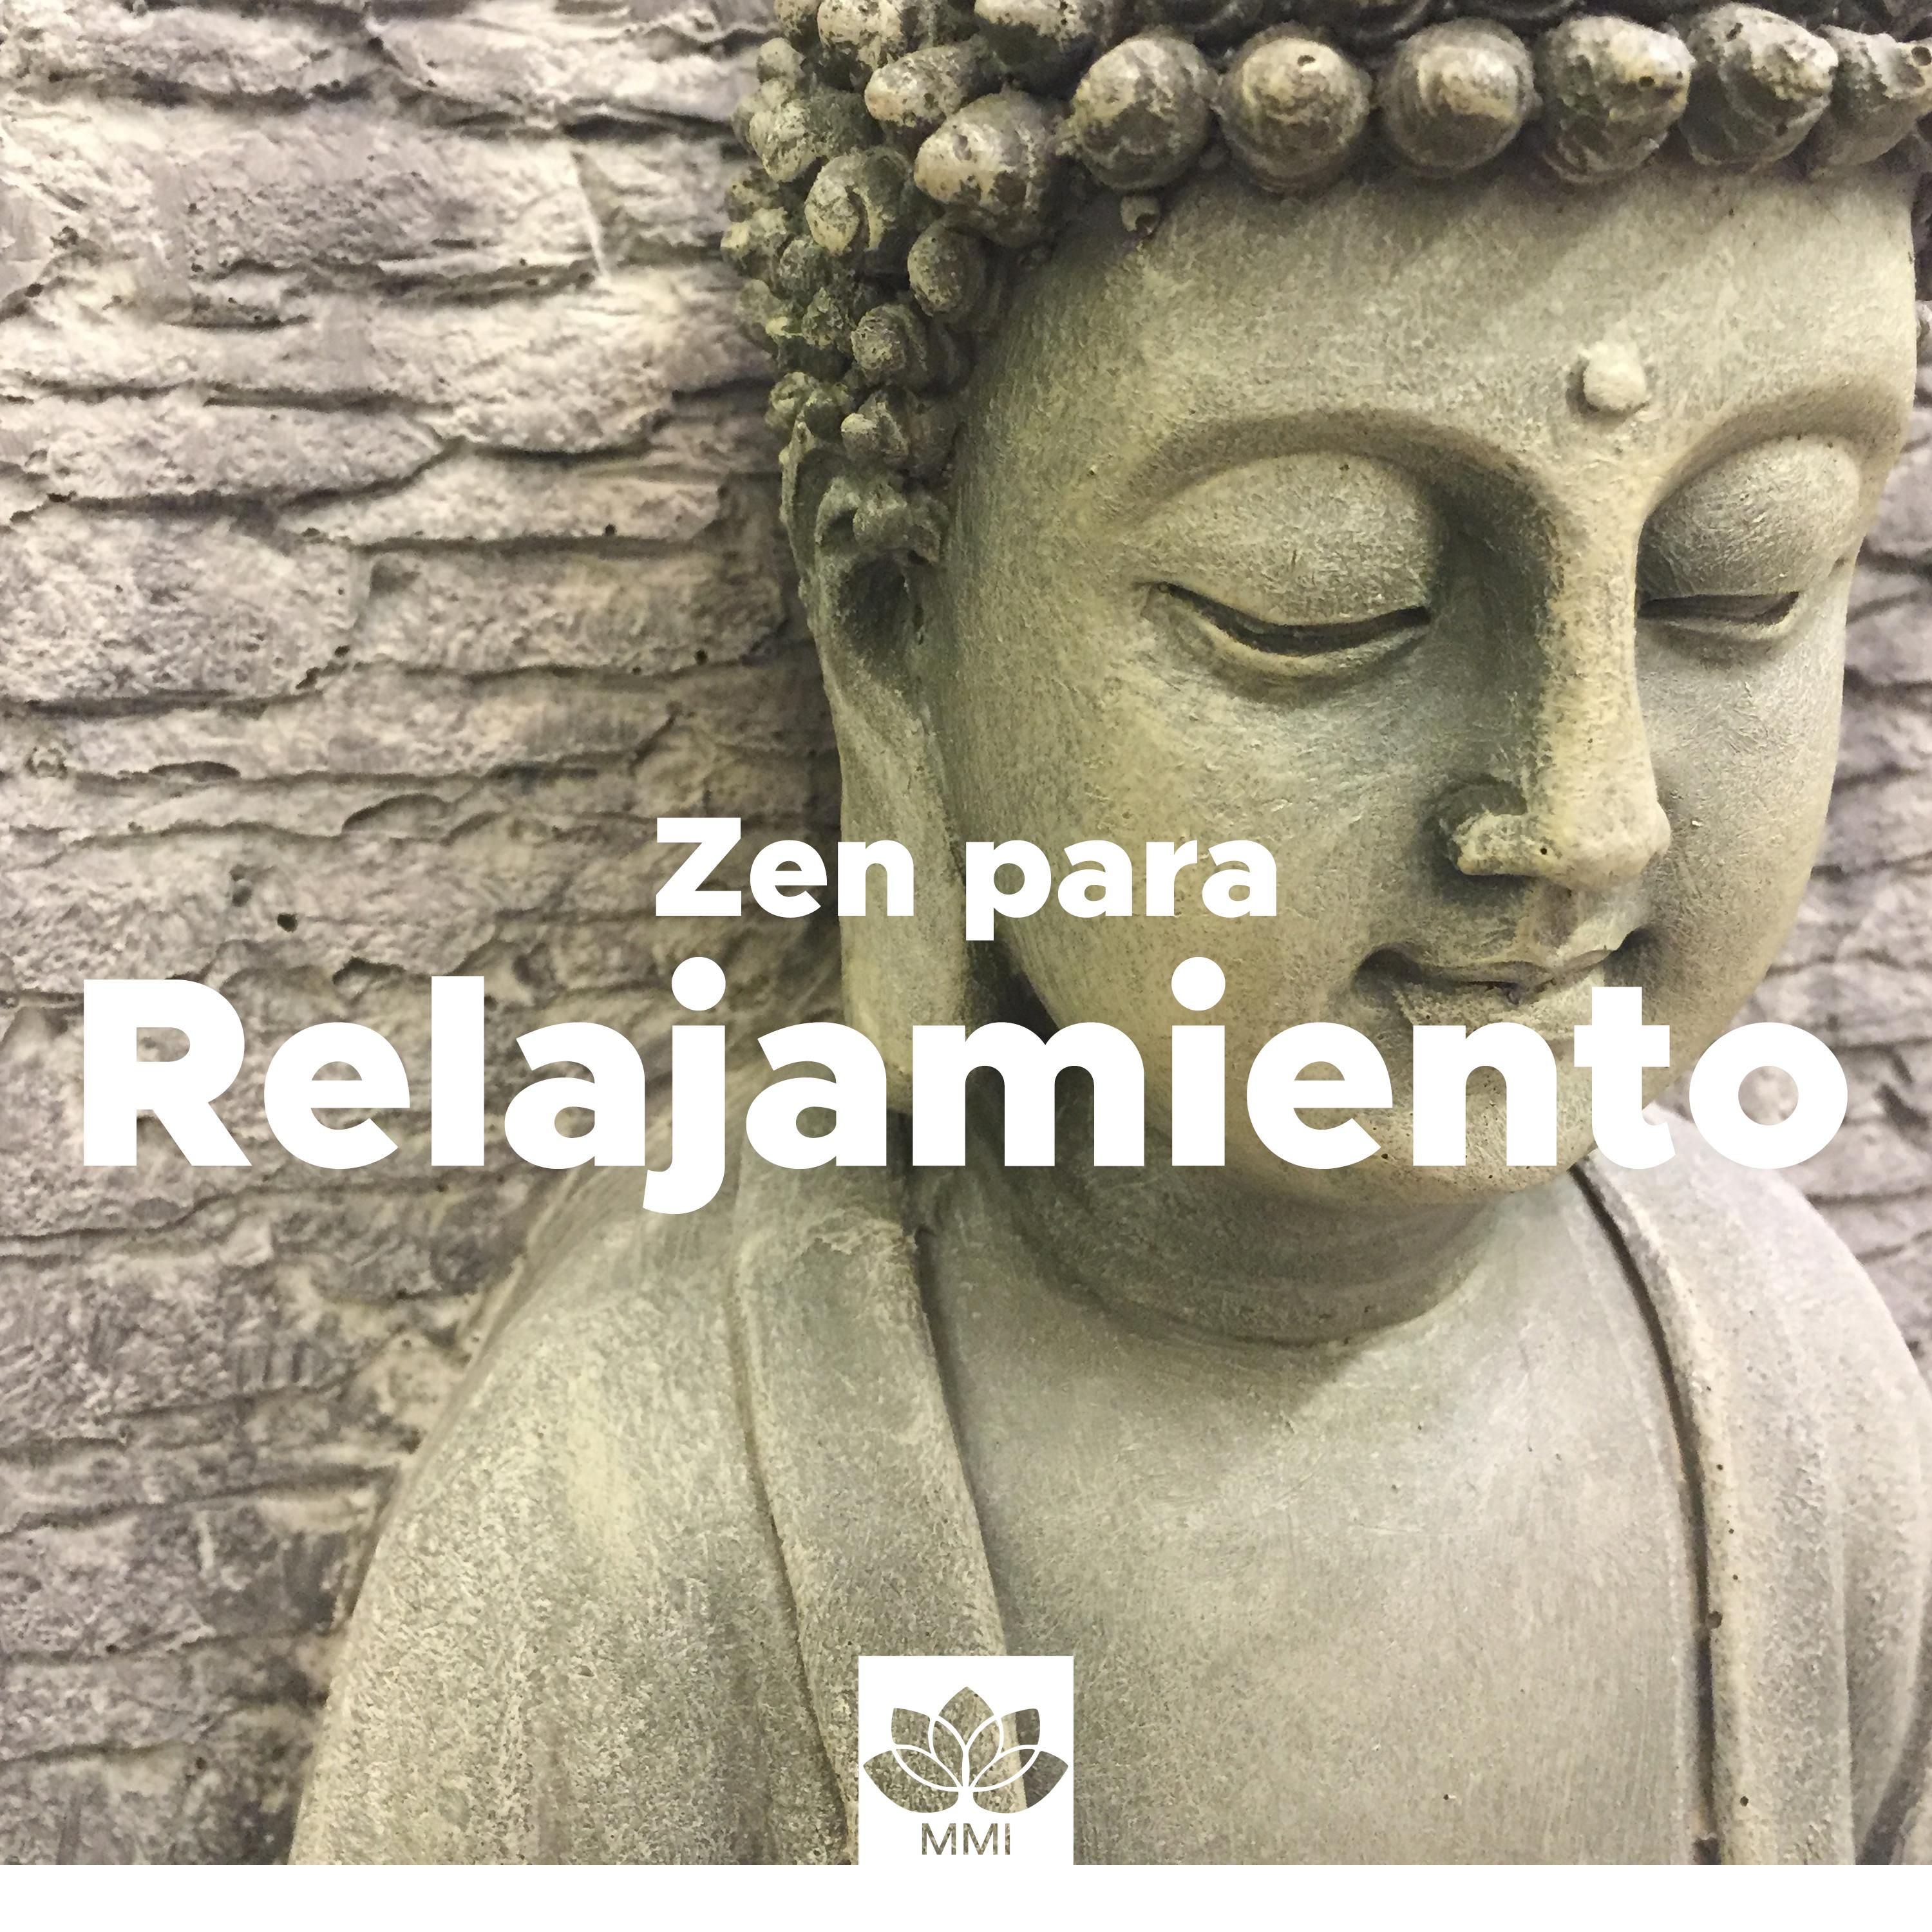 Zen para Relajamiento  Curso de Desarrollo Personal, La Triada Perfecta: Cuerpo, Mente y Espi ritu